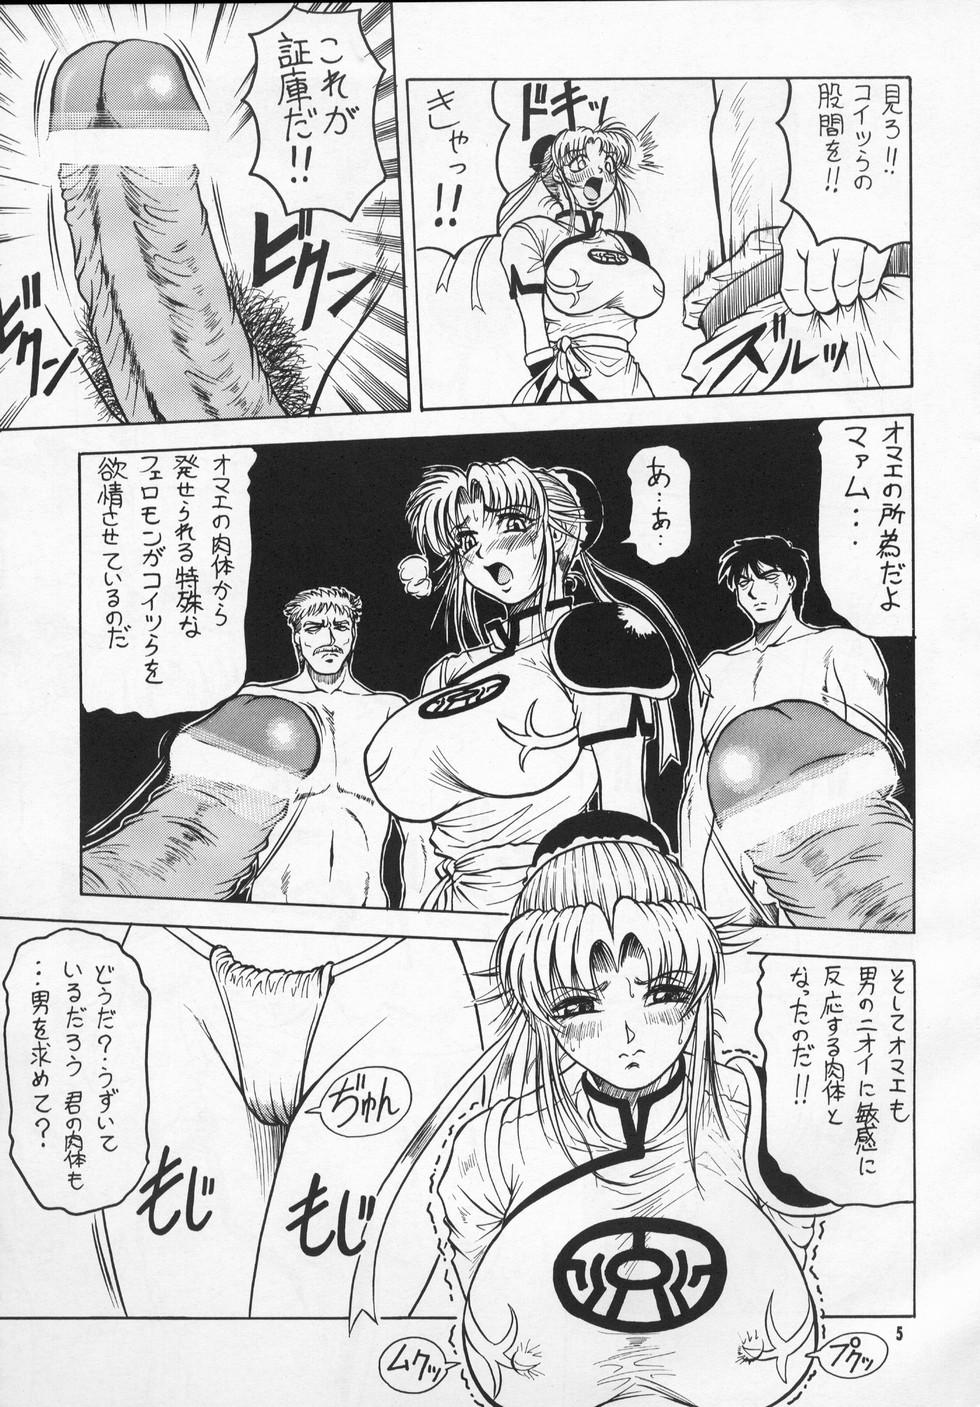 Gilf Bessatsu Maamu 12 Tsukigou Petera - Page 4